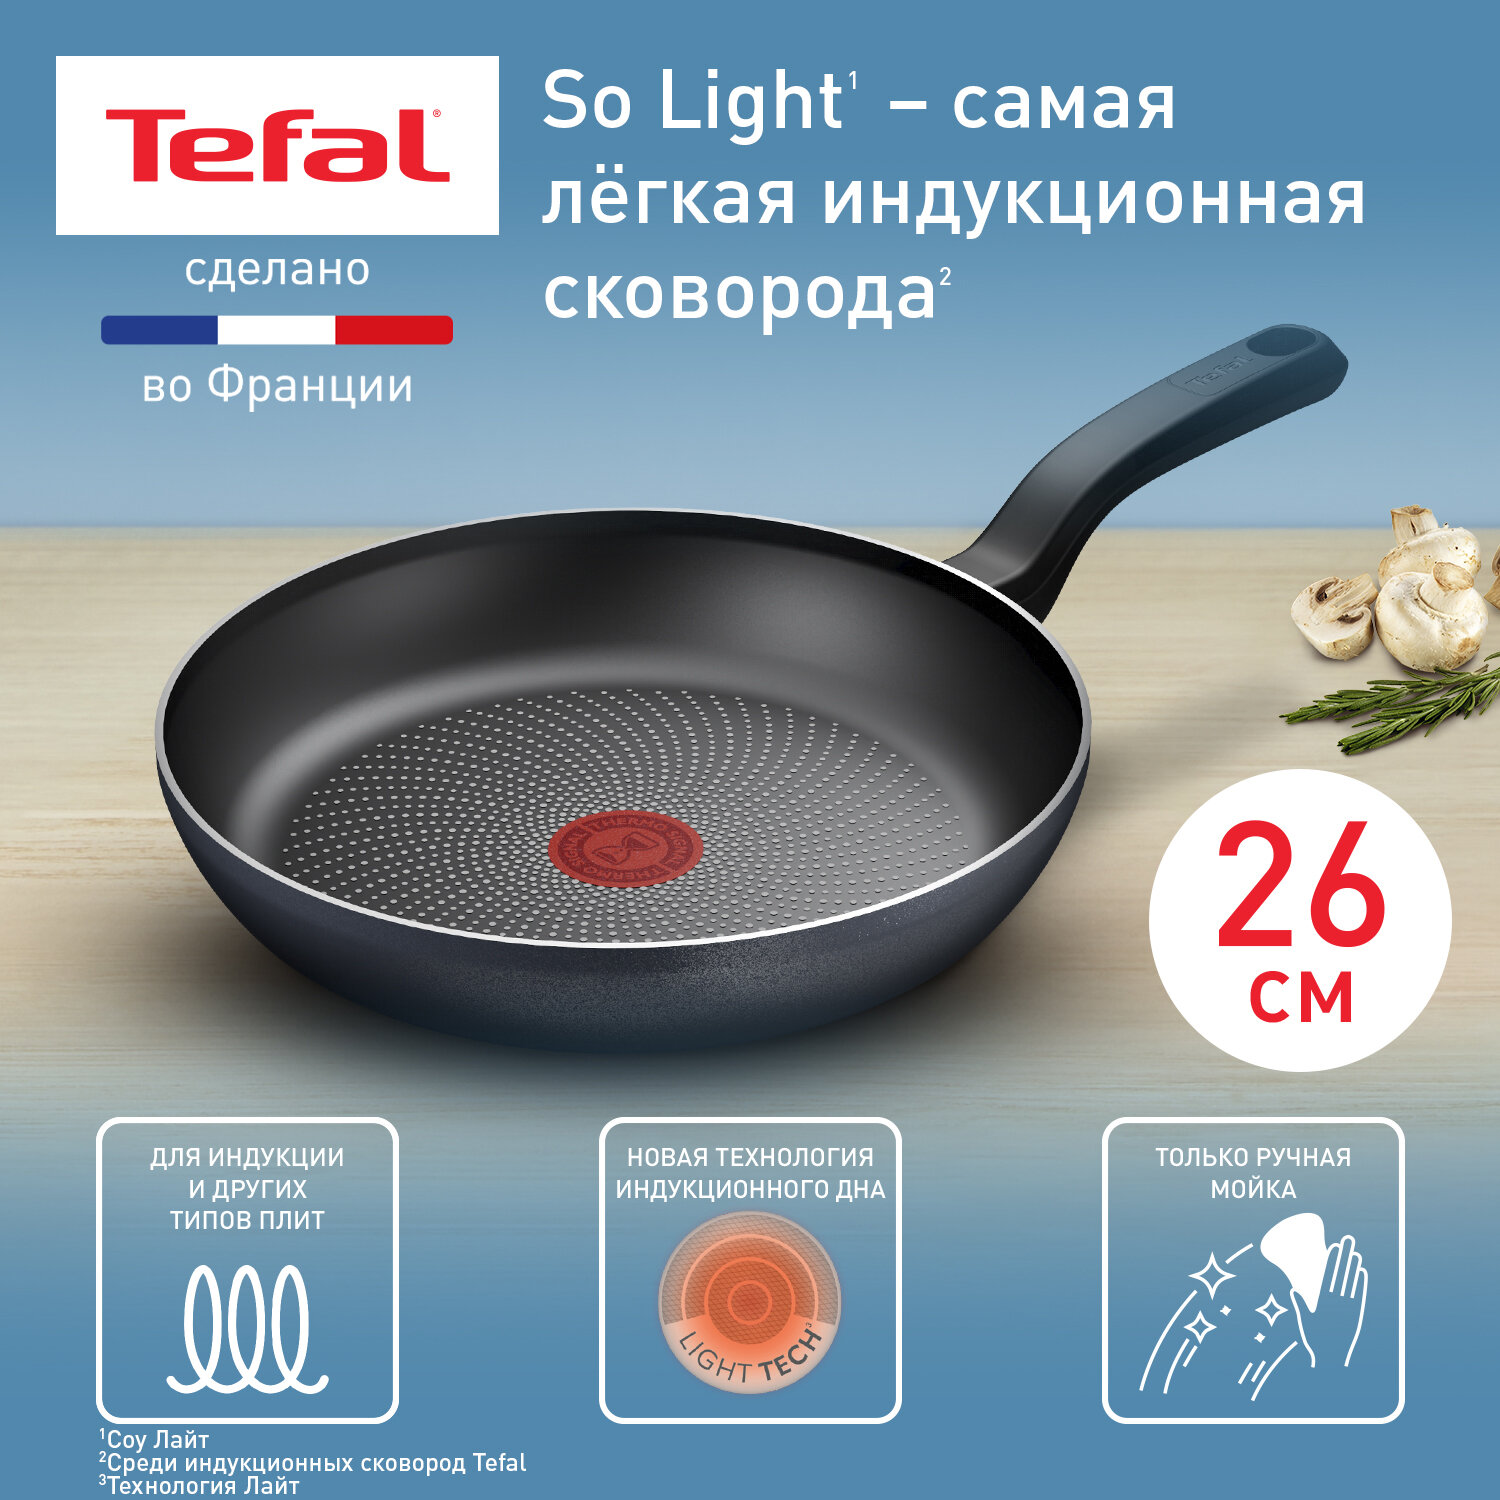 Сковорода Tefal So' Light H0560542, 26 см, с индикатором нагрева, подходит для всех типов плит, включая индукционные